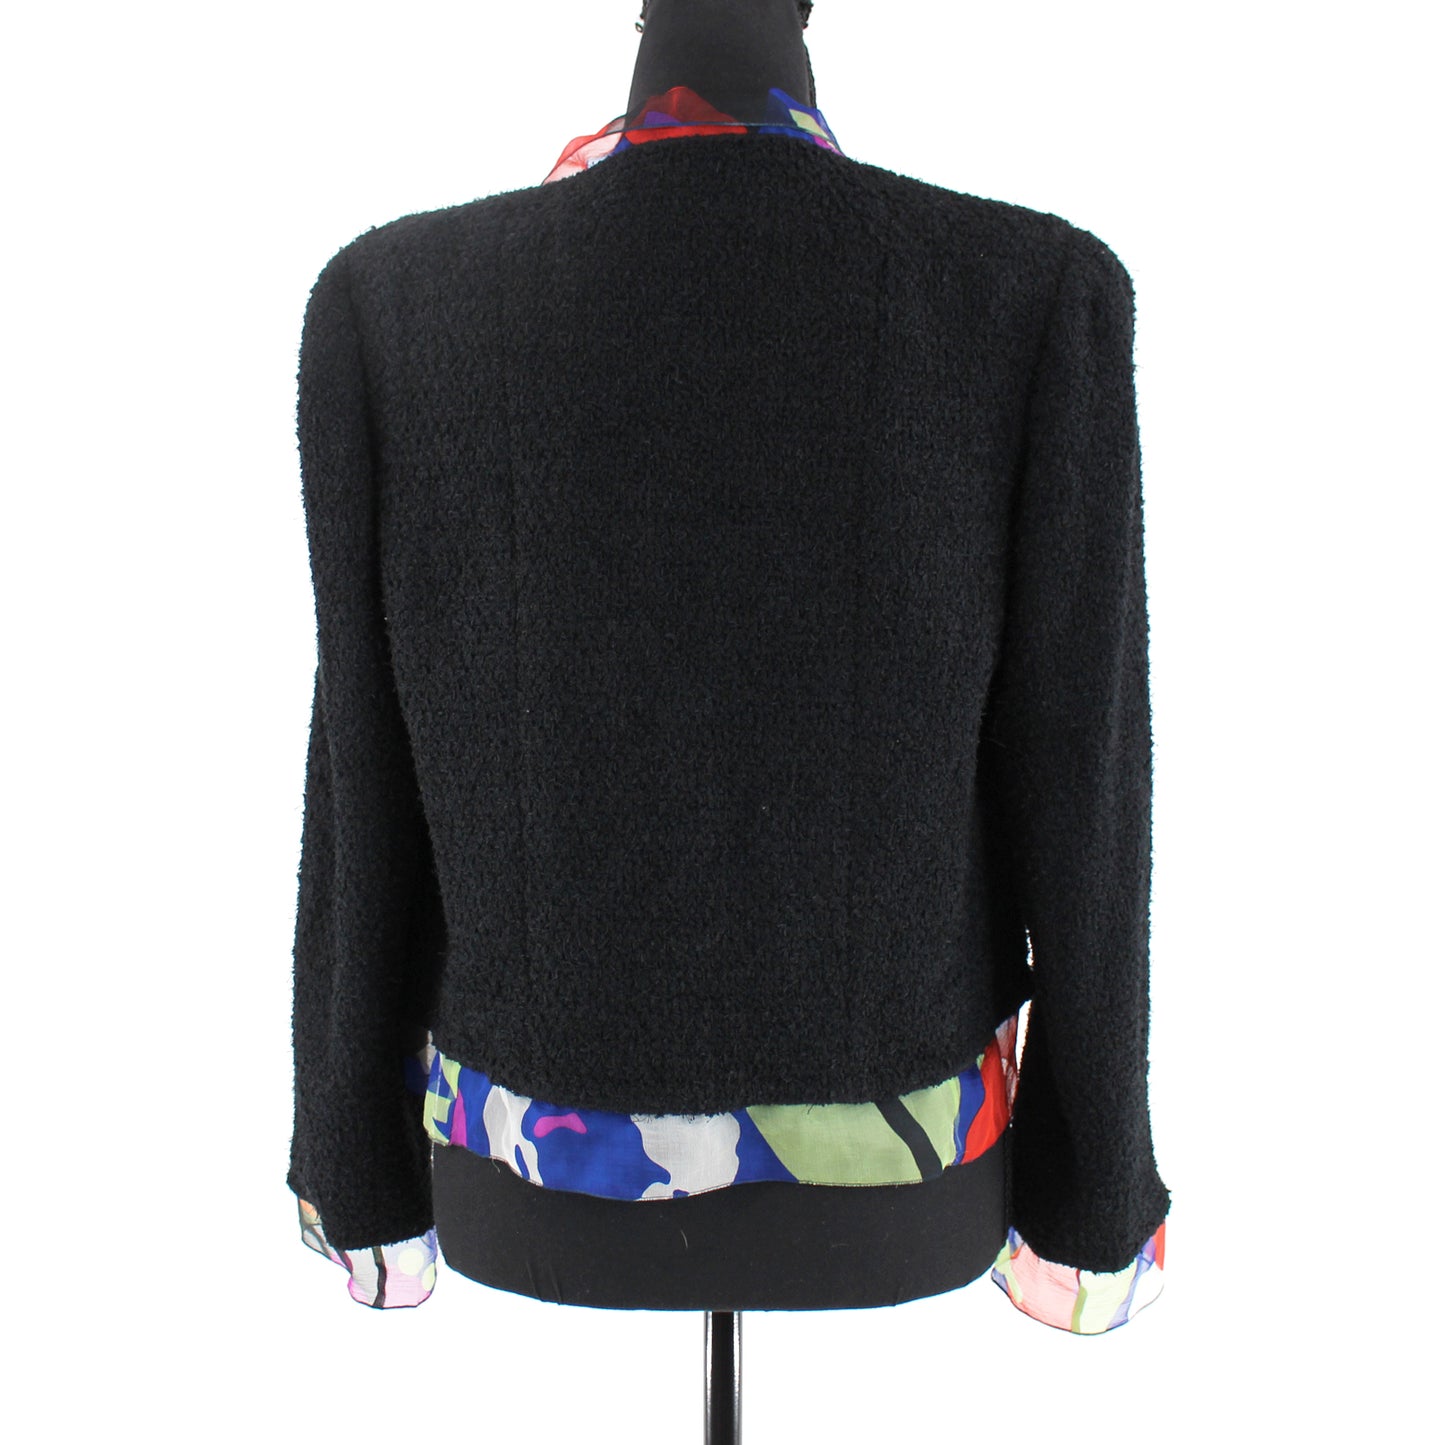 Chanel Silk Trim Suit Jacket